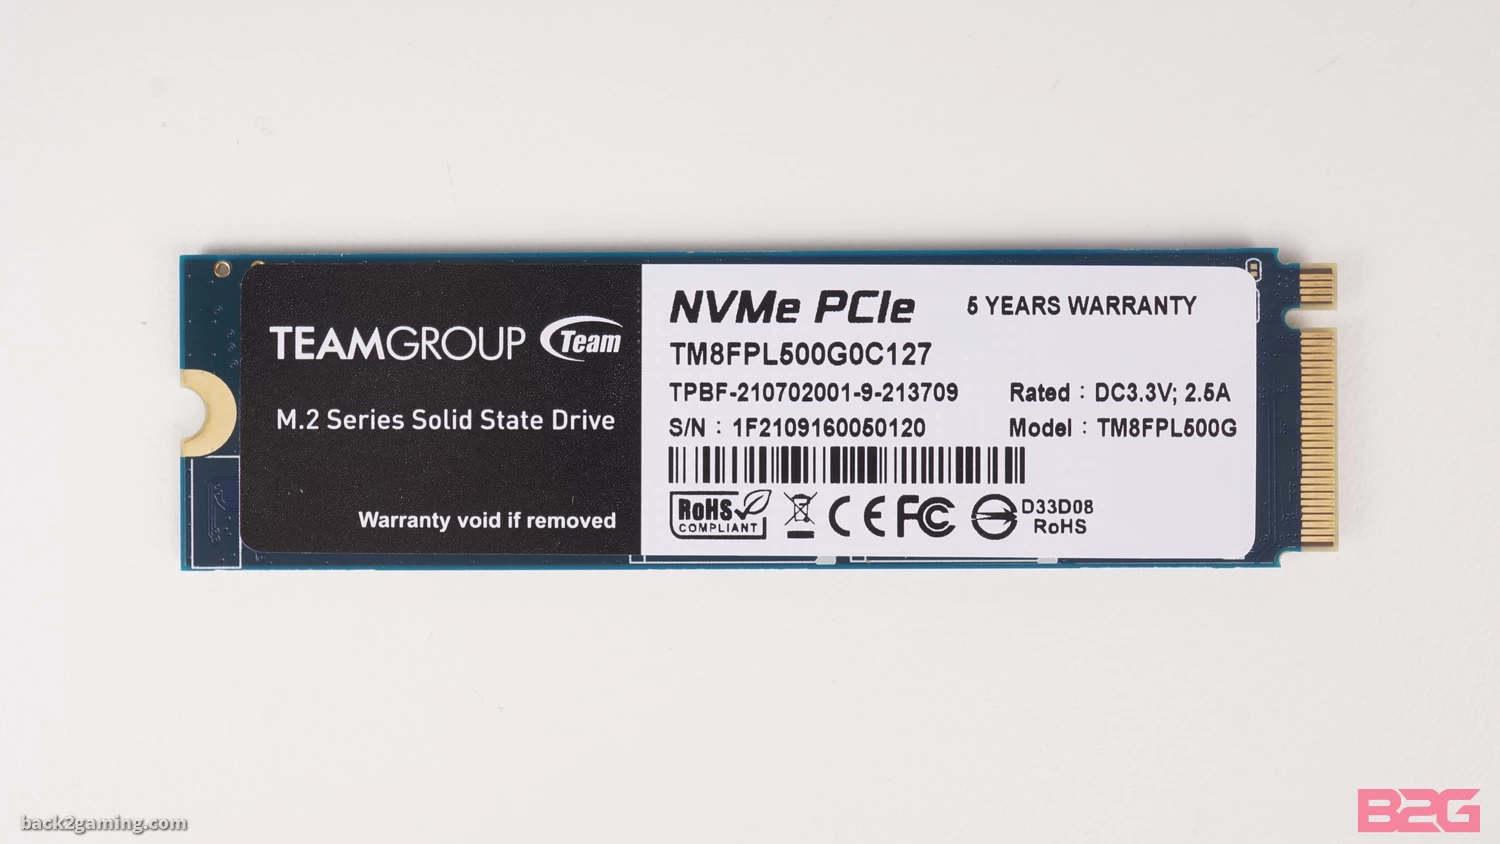 T-Force Cardea Z44L PCIe 4.0 NVMe M.2 SSD Review - Z44L